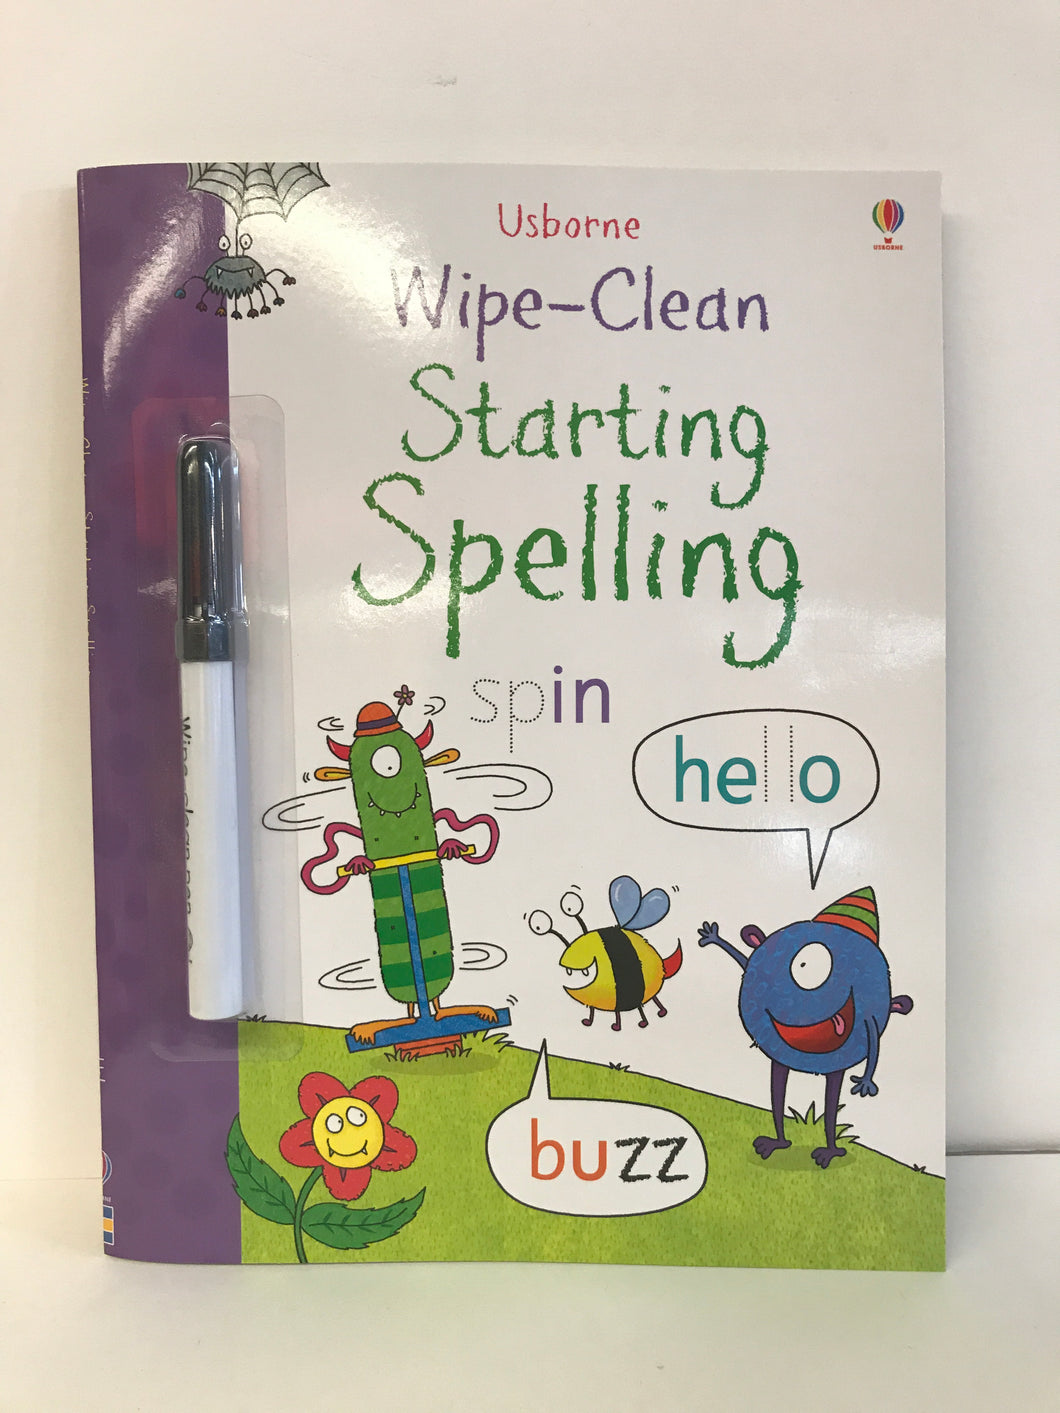 Wipe Clean Starting Spelling